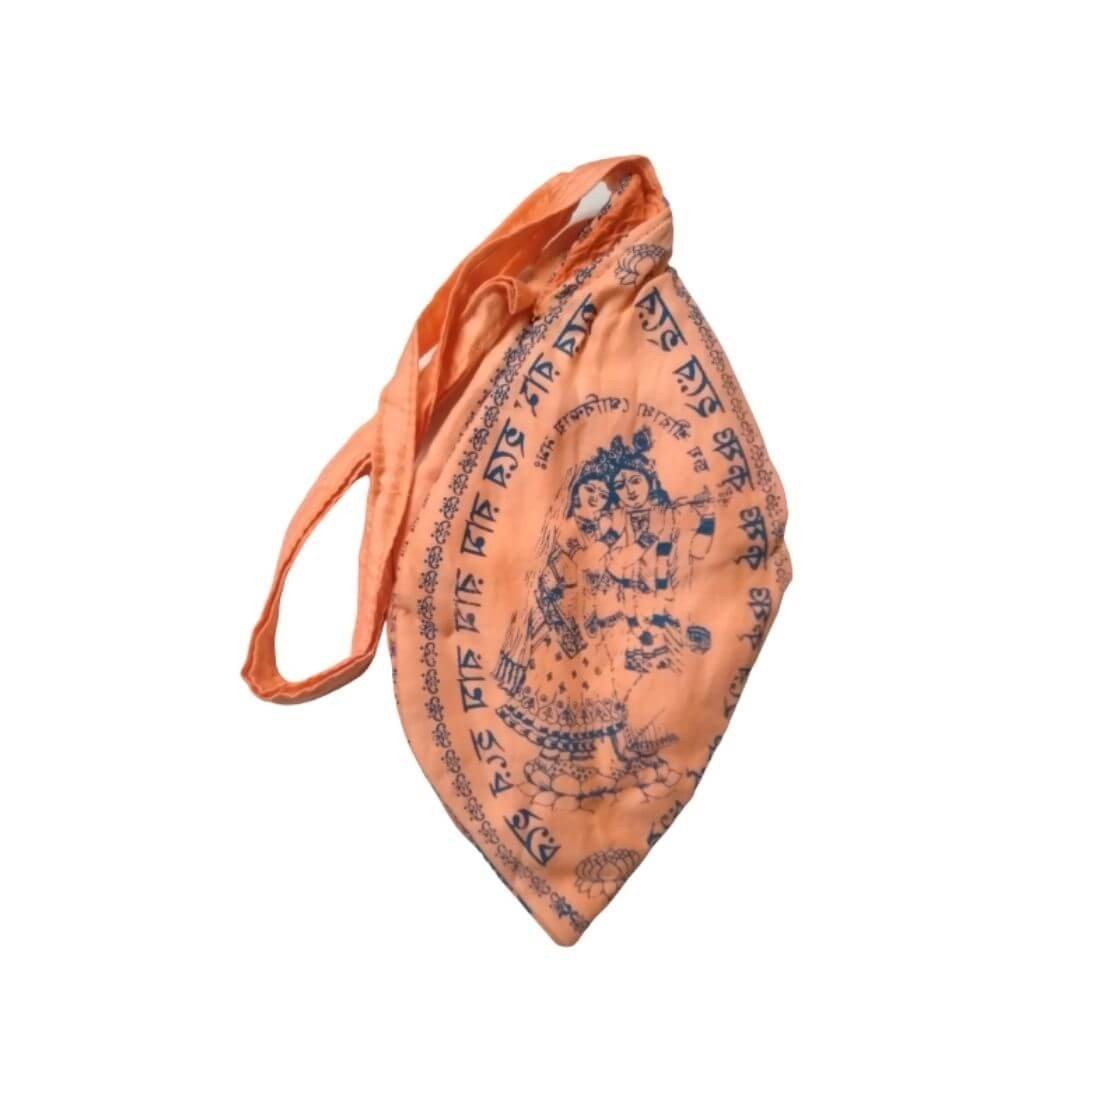 MAYAPURI Coral Color Hare Krishna Japa Mala Bag/Bead Bag/Chanting Bag